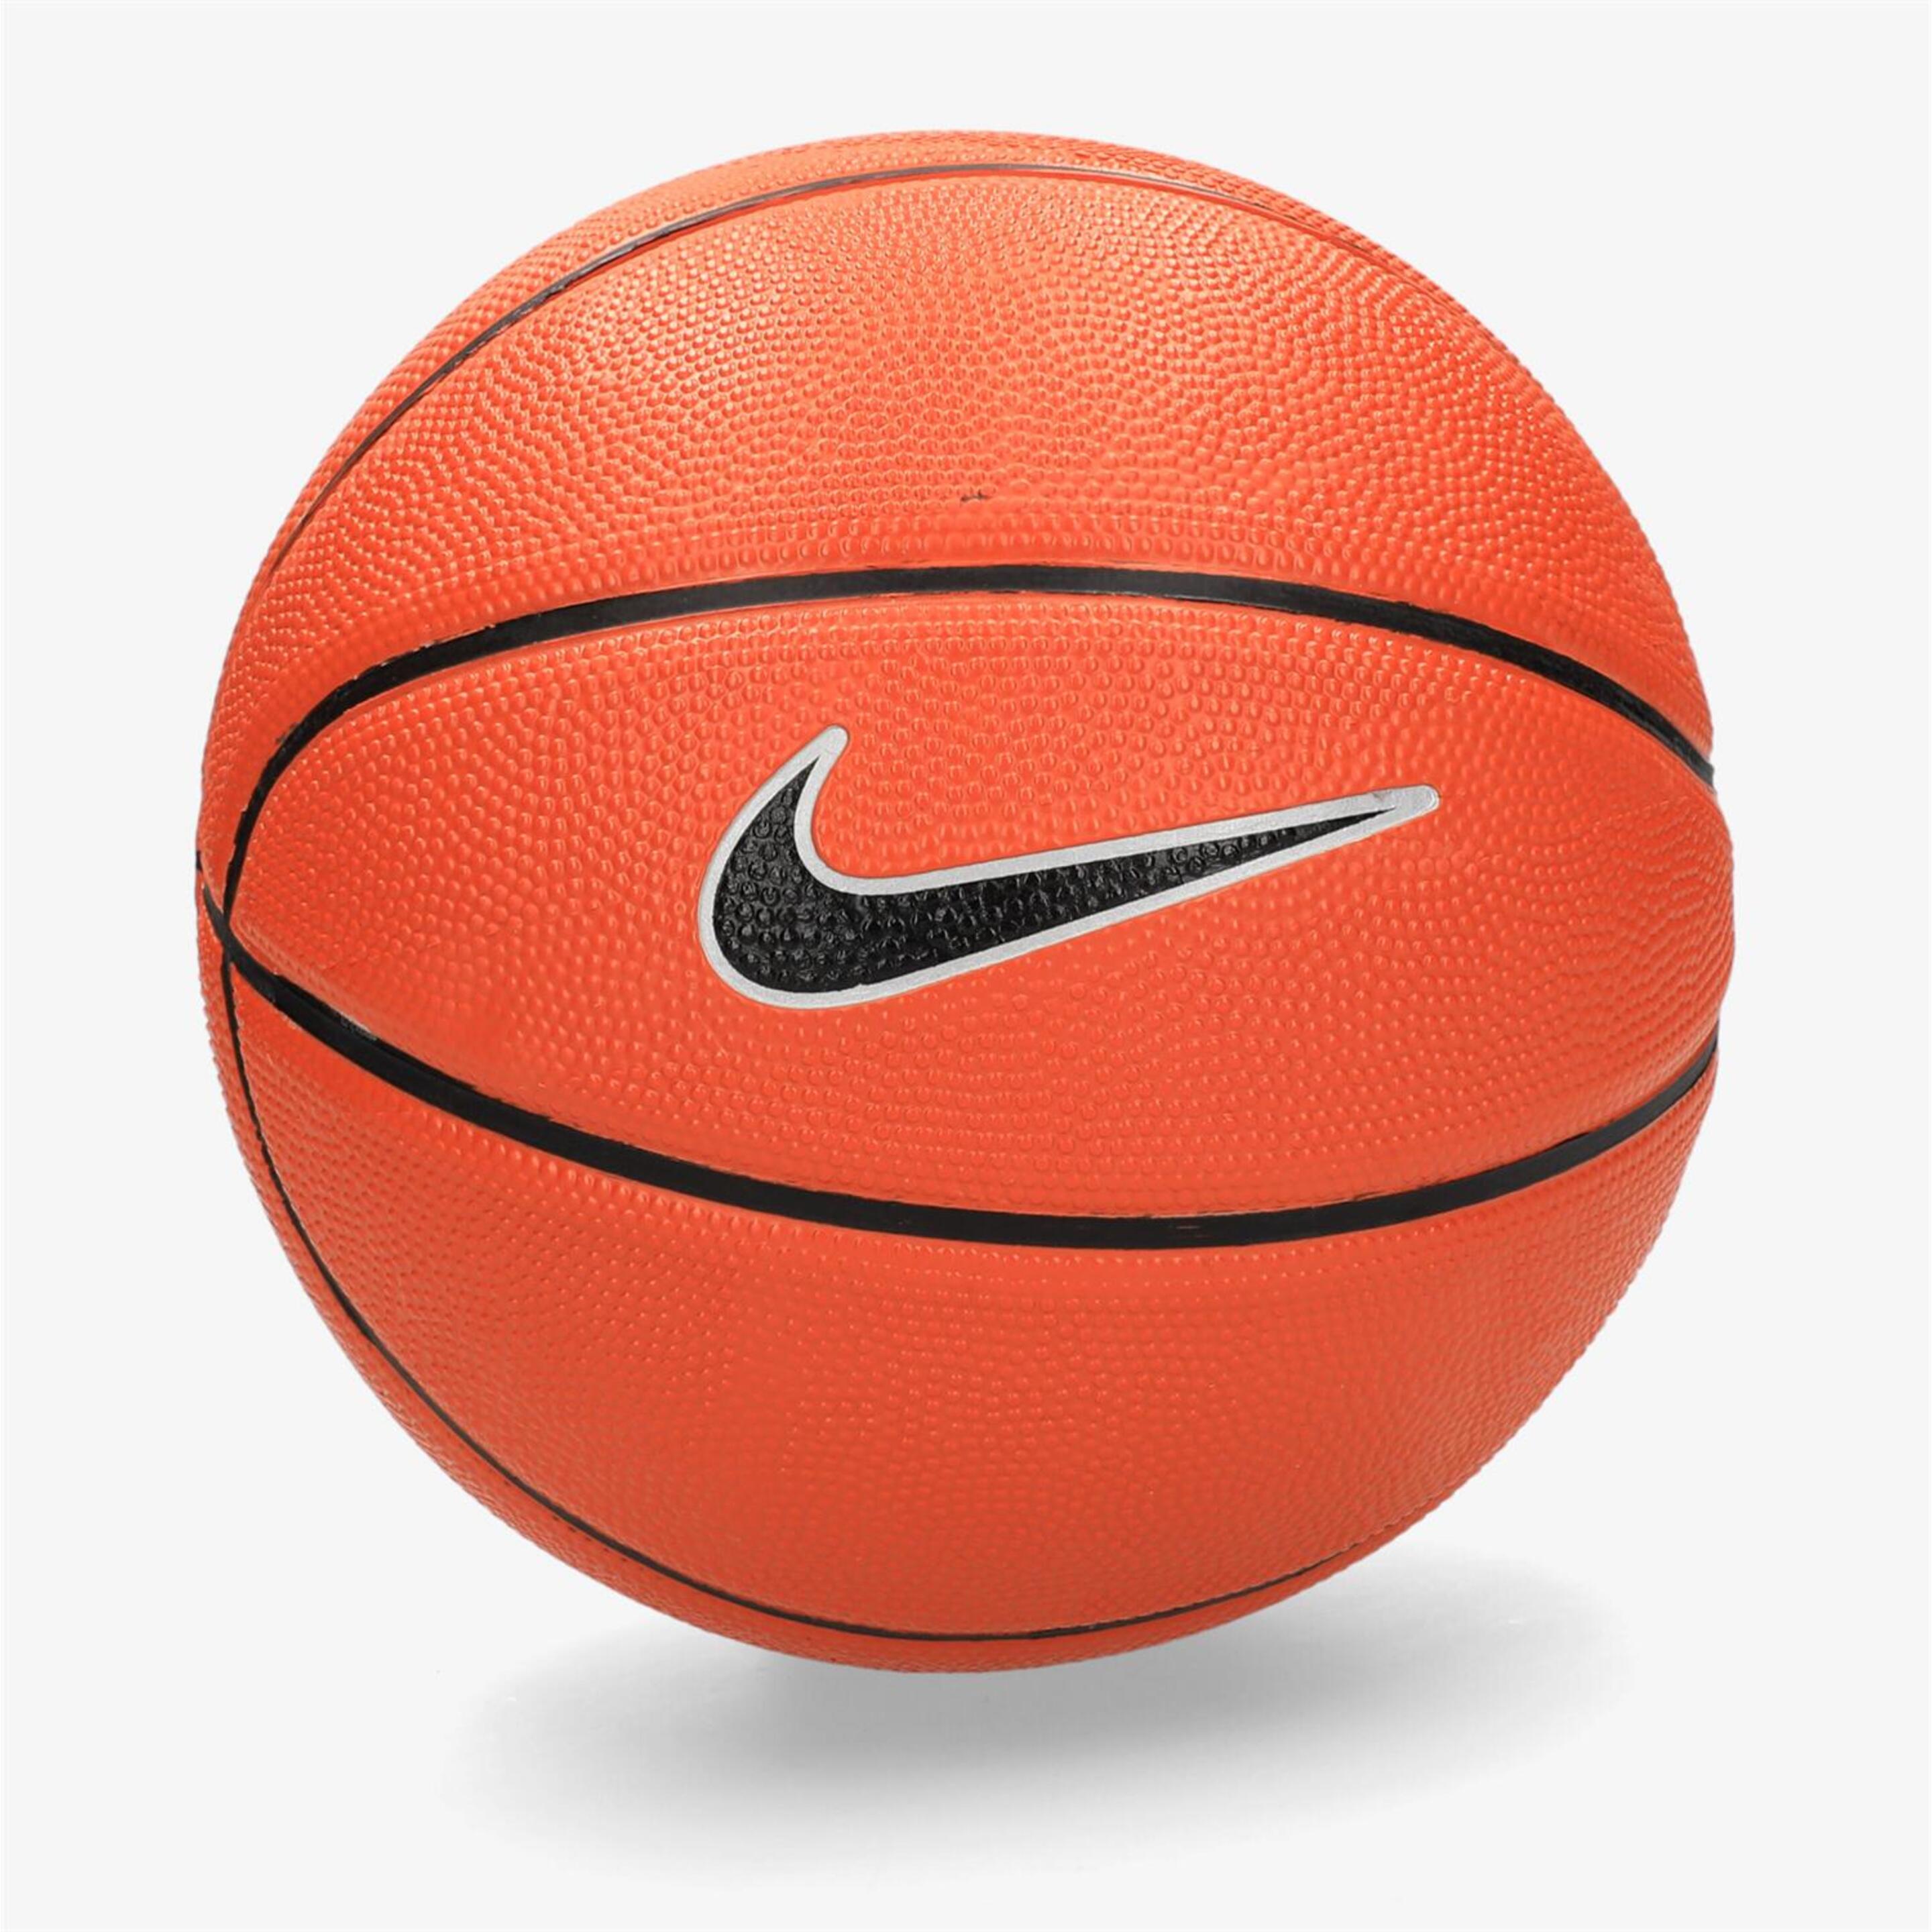 Mini Bola De Basquete Nike - naranja - Bola Pequena Basquetebol